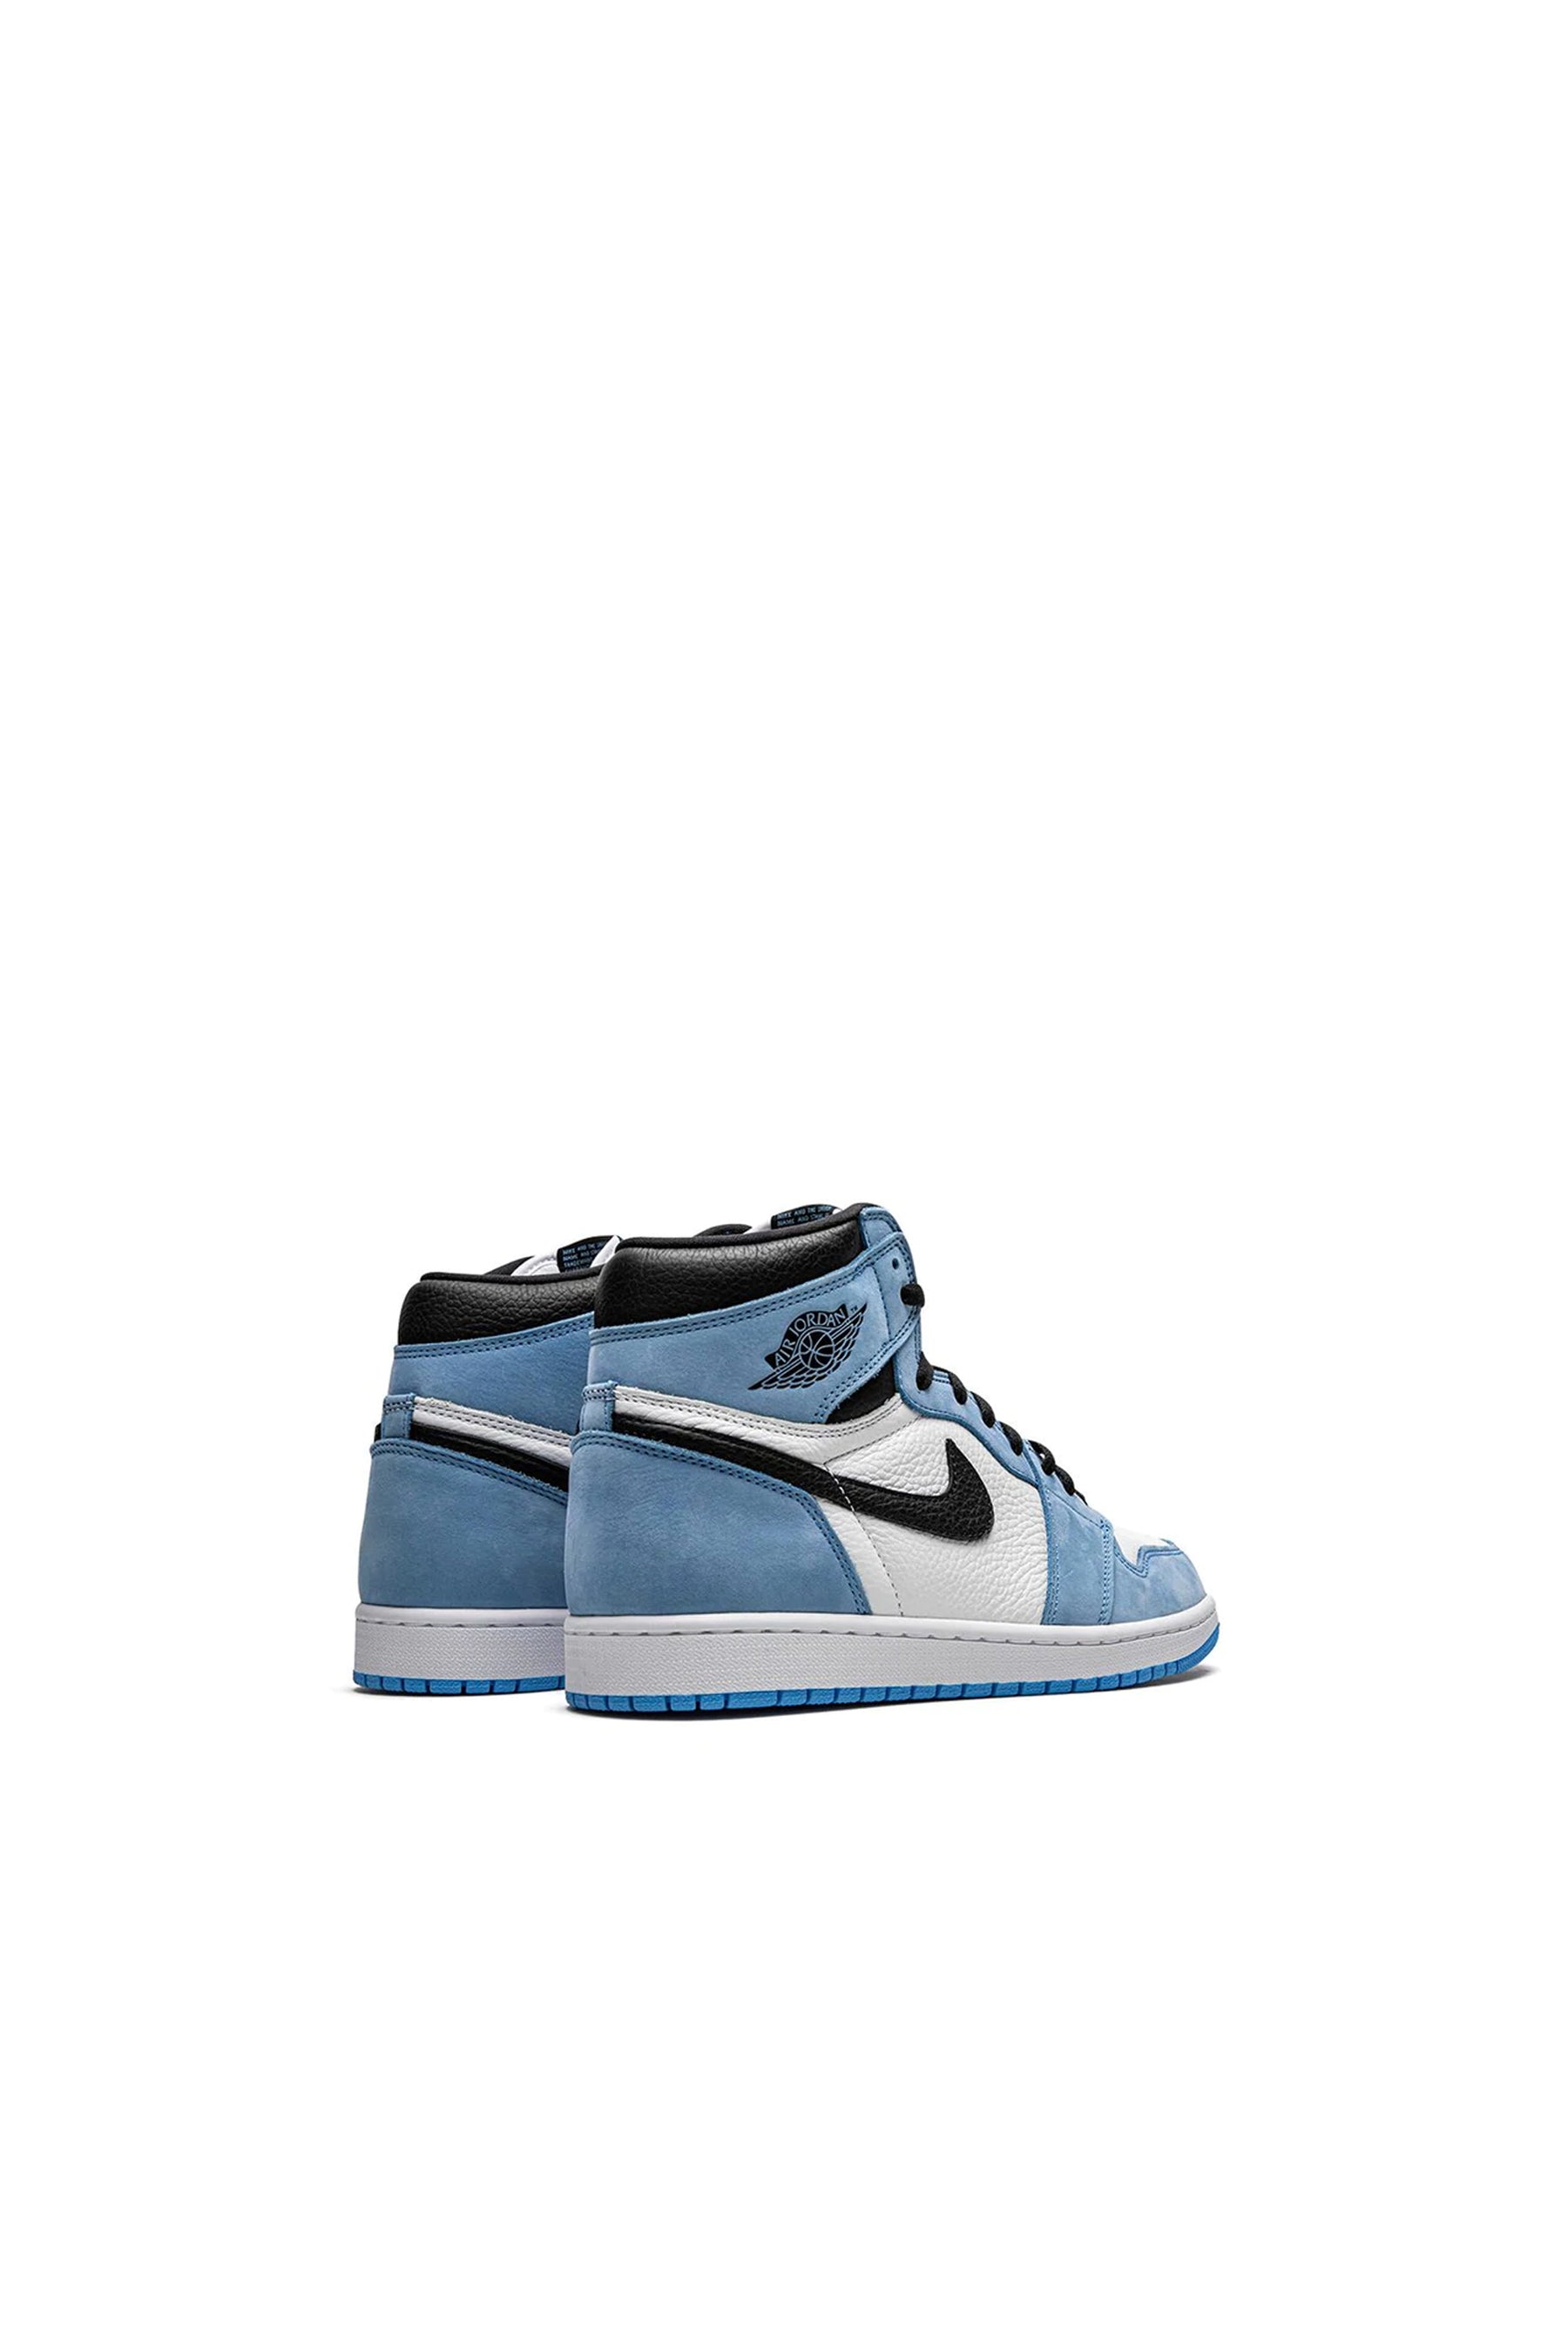 Nike Air Jordan 1 Retro GS sneakers